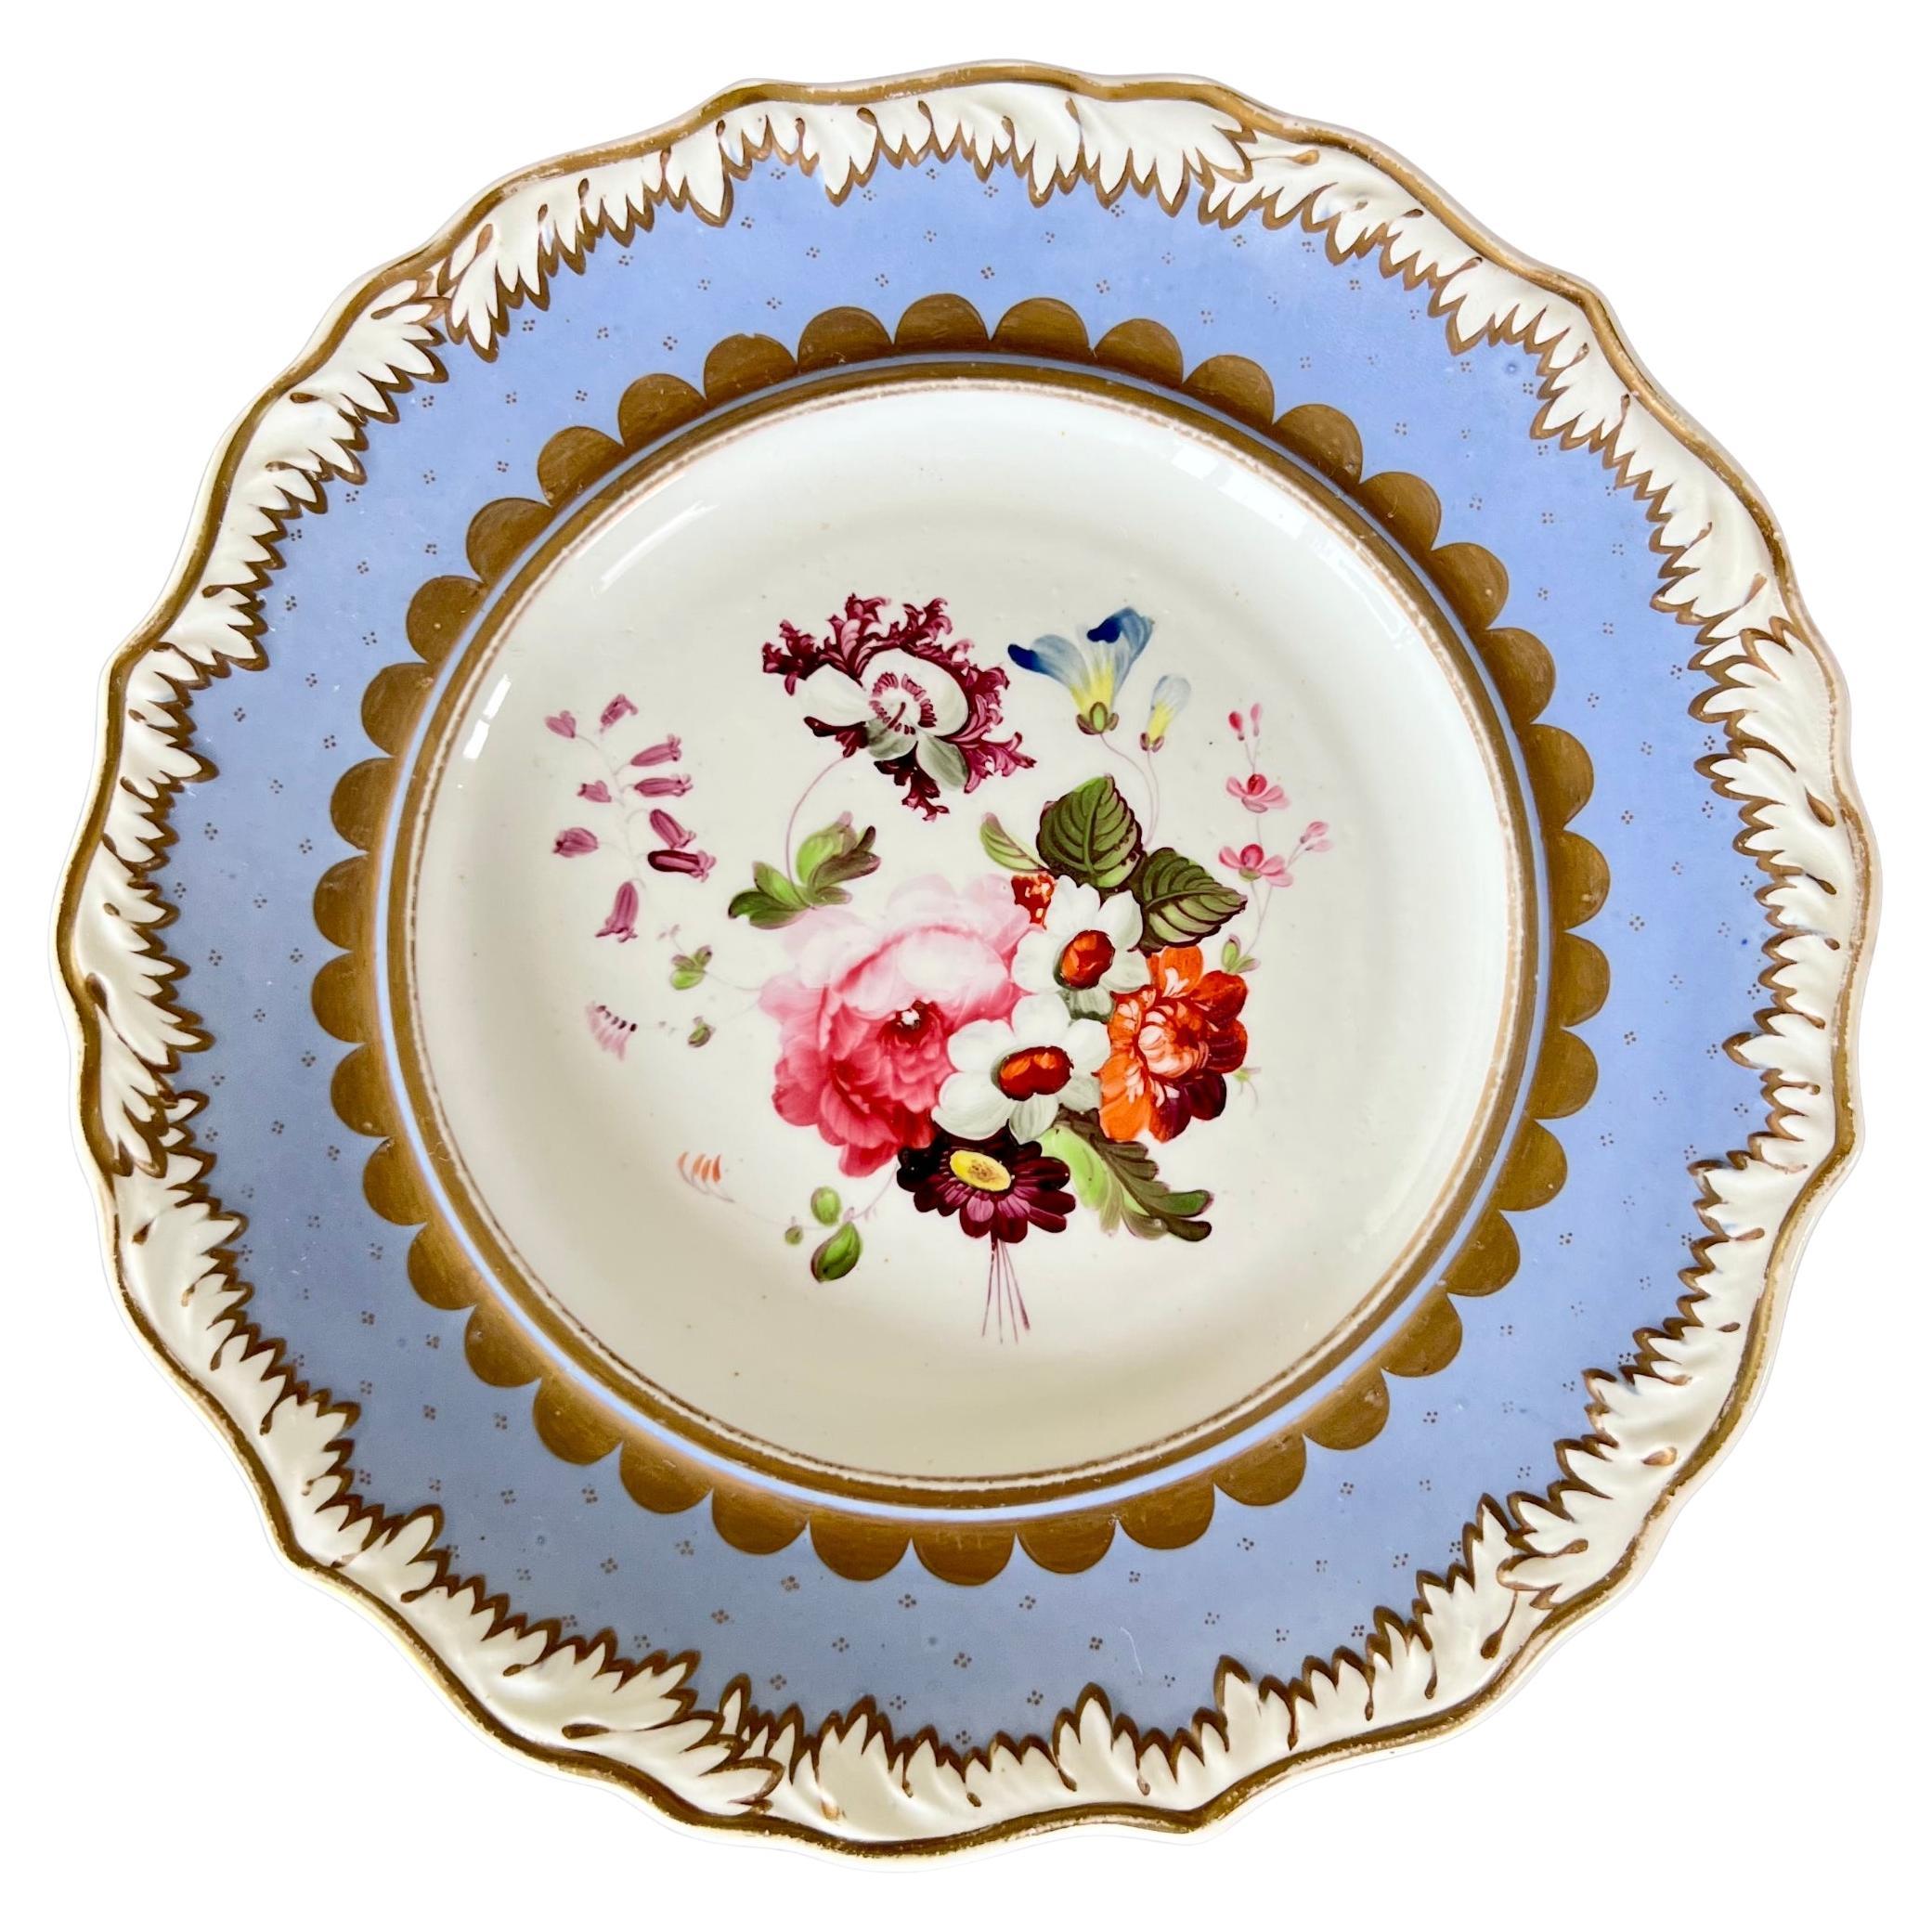 Assiette Samuel Alcock, bordure de neige fondue, lilas bleu pervenche, fleurs, vers 1822